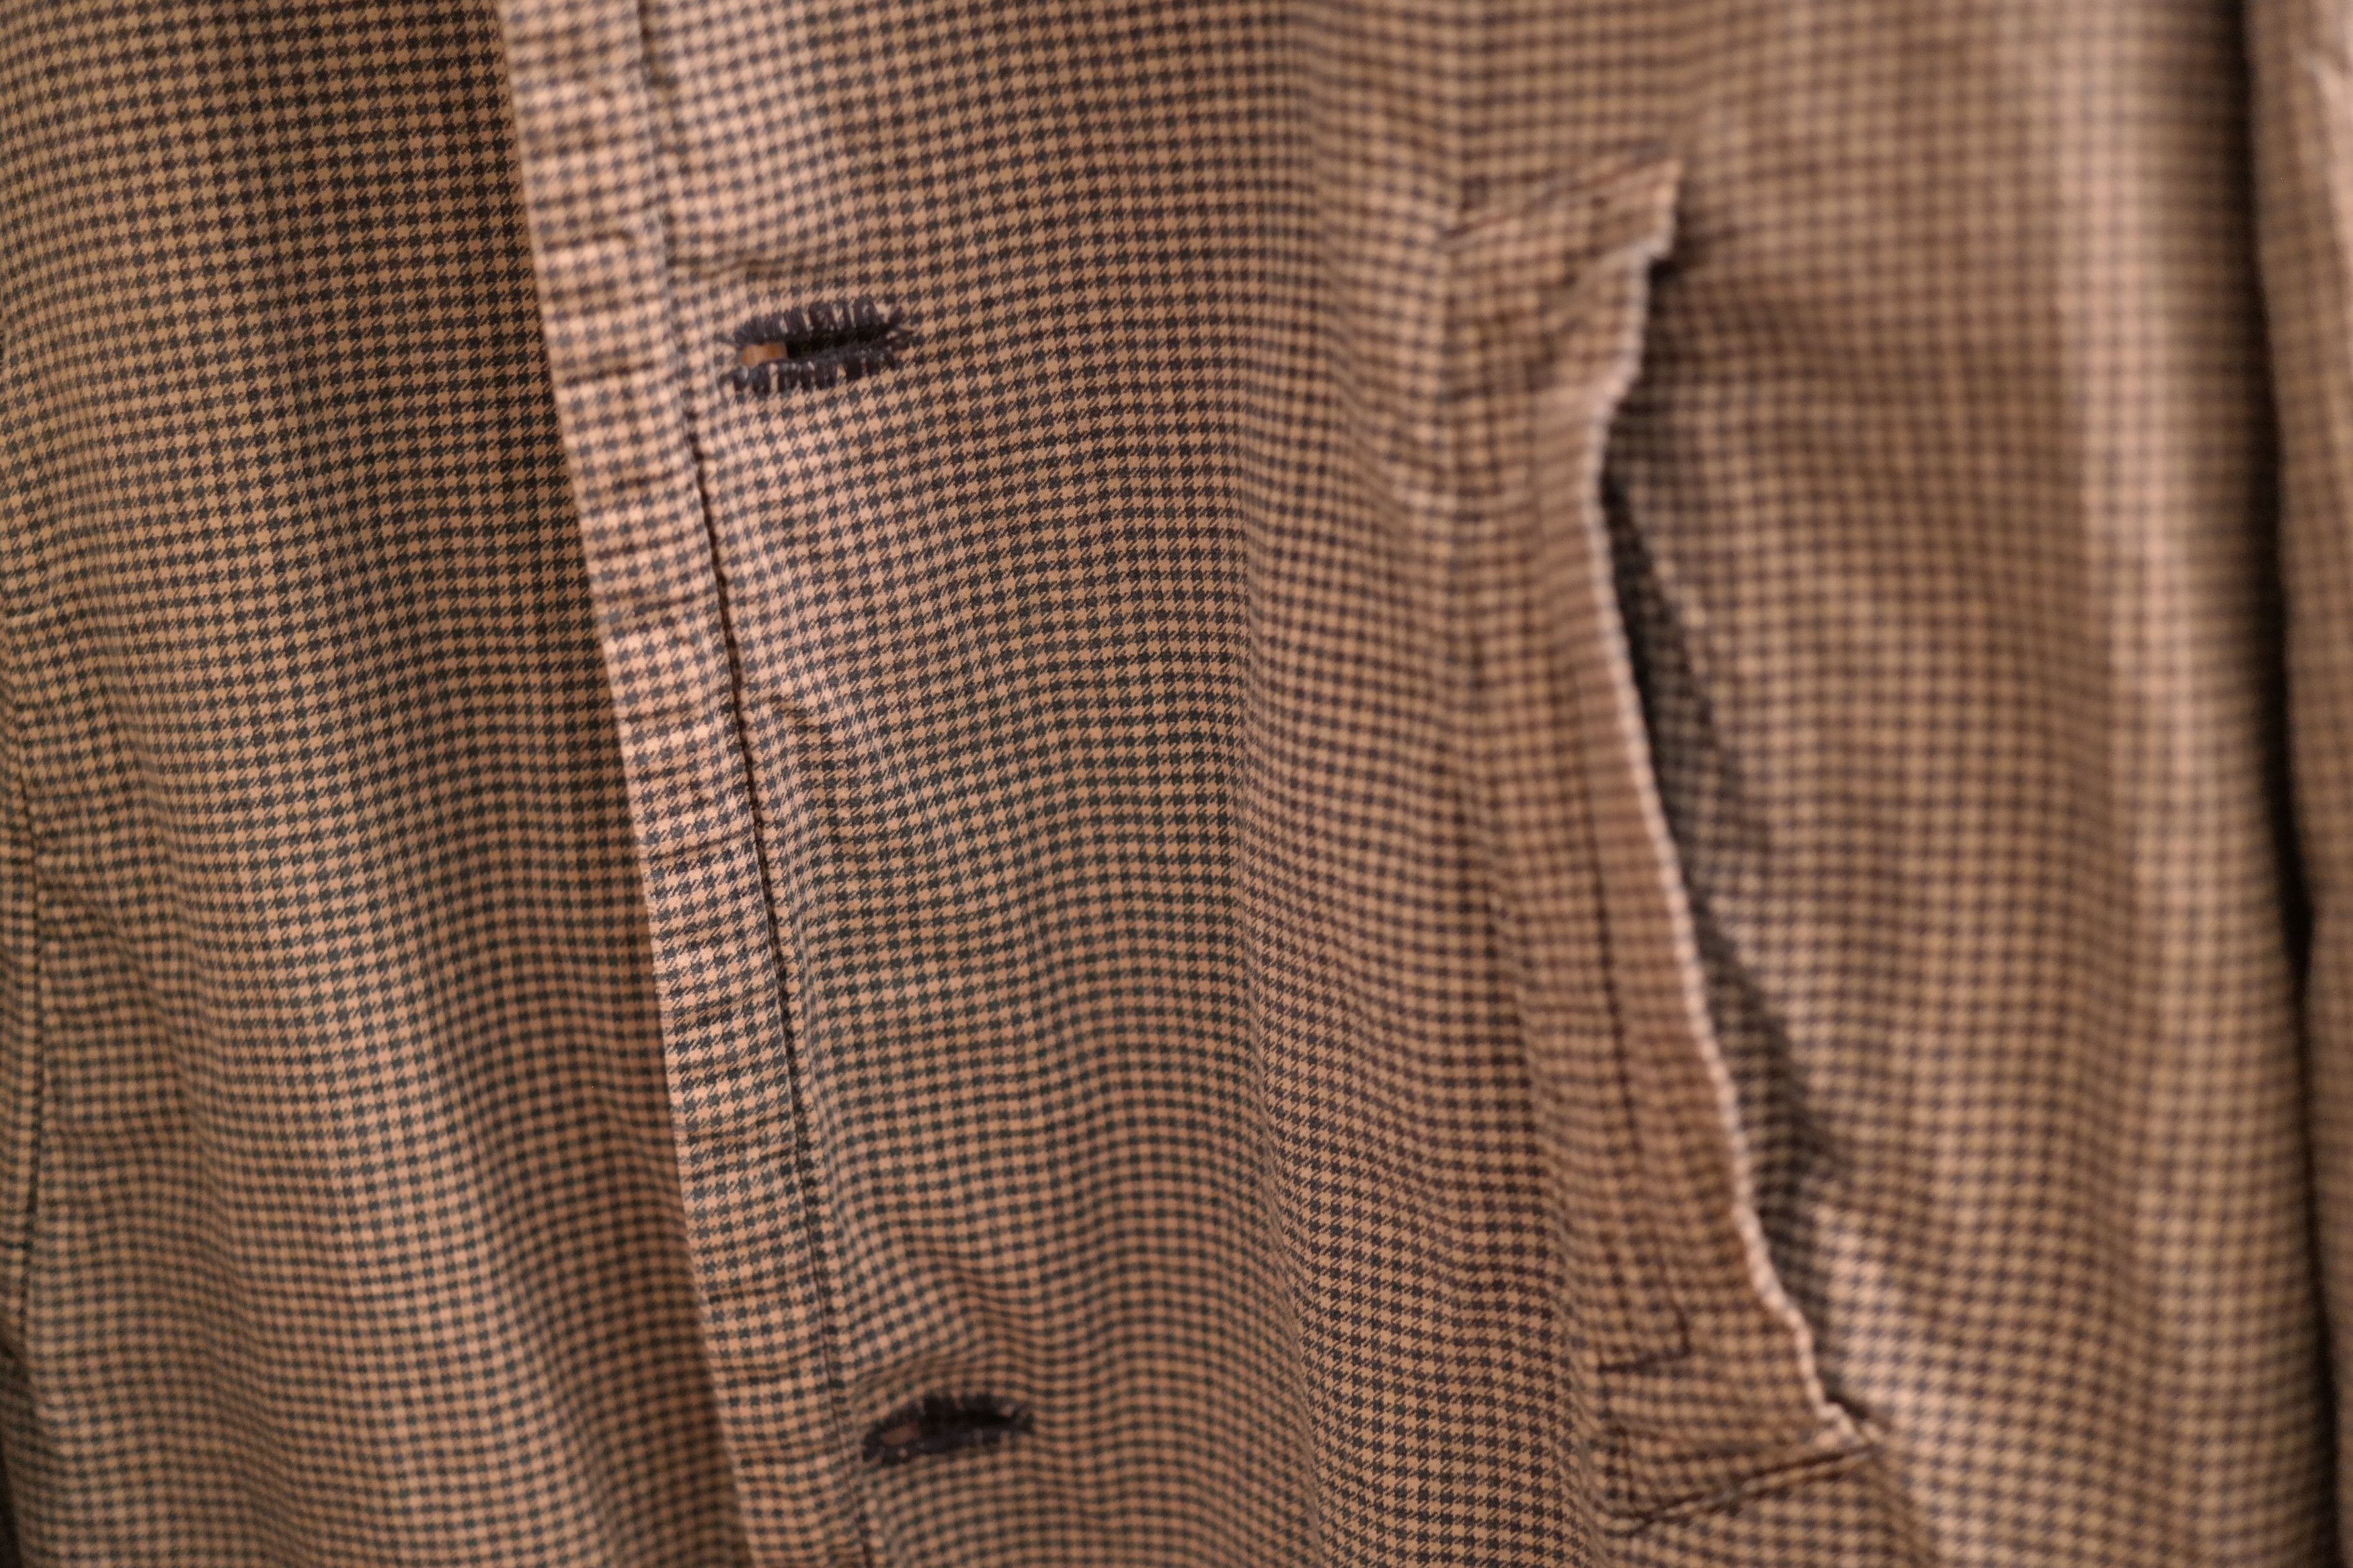 Visvim Mies Coat Indigo Check Size US M / EU 48-50 / 2 - 8 Thumbnail